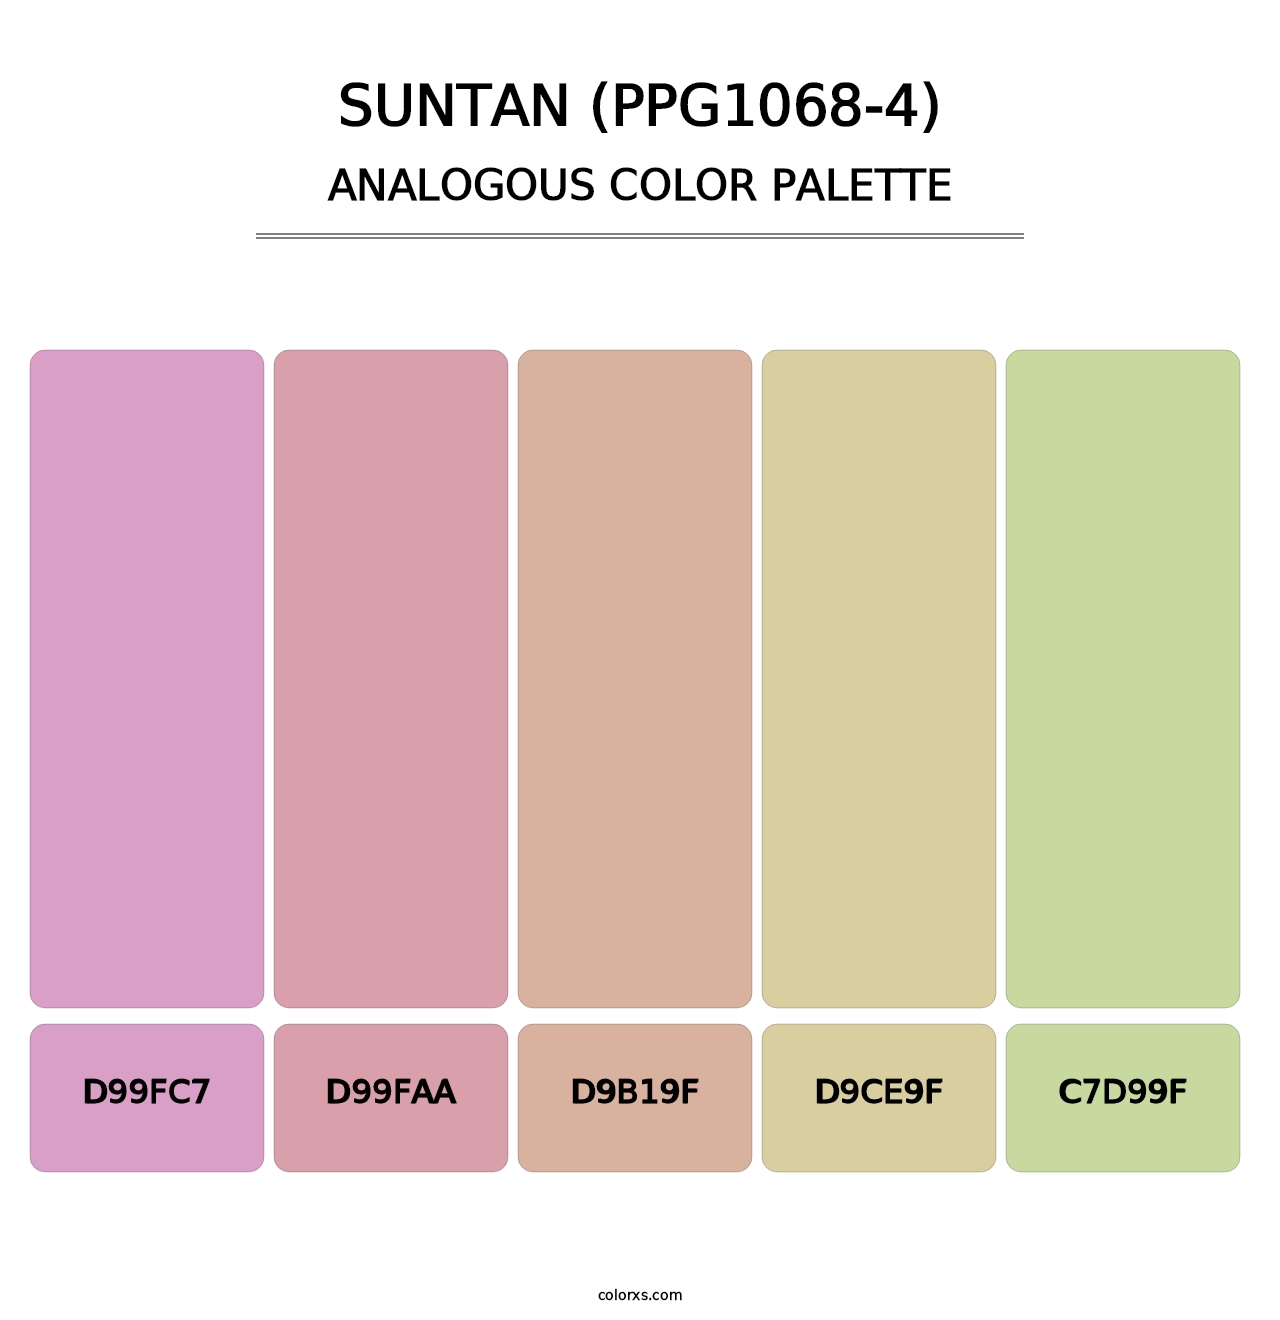 Suntan (PPG1068-4) - Analogous Color Palette